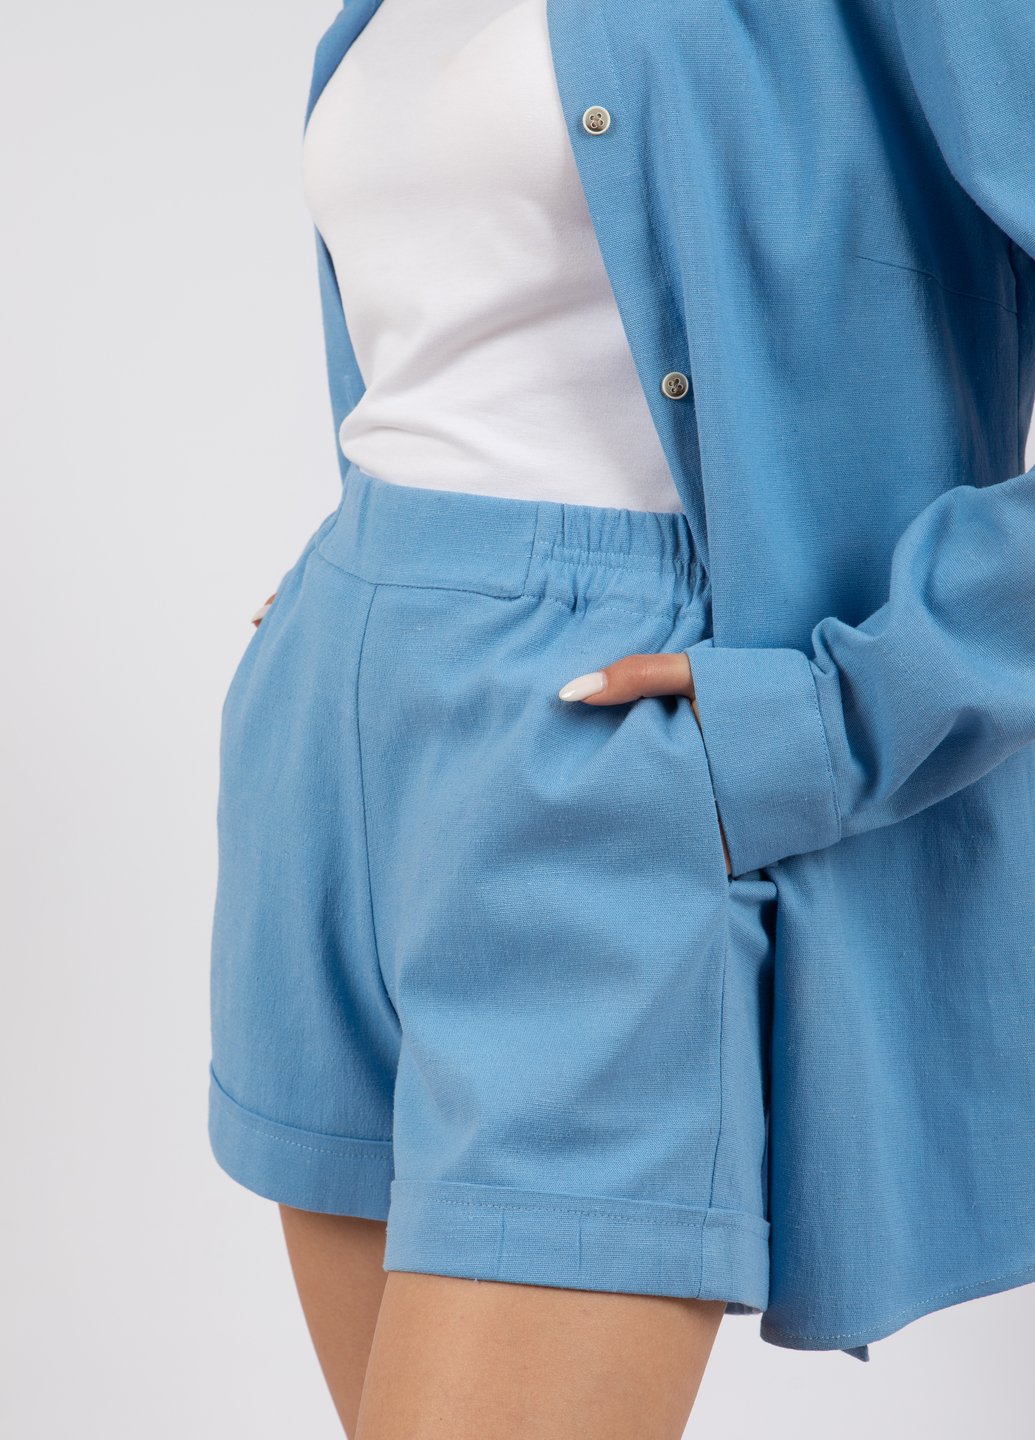 Купить Льняные шорты женские Merlini Рим 300000010 - Голубой, 42-44 в интернет-магазине